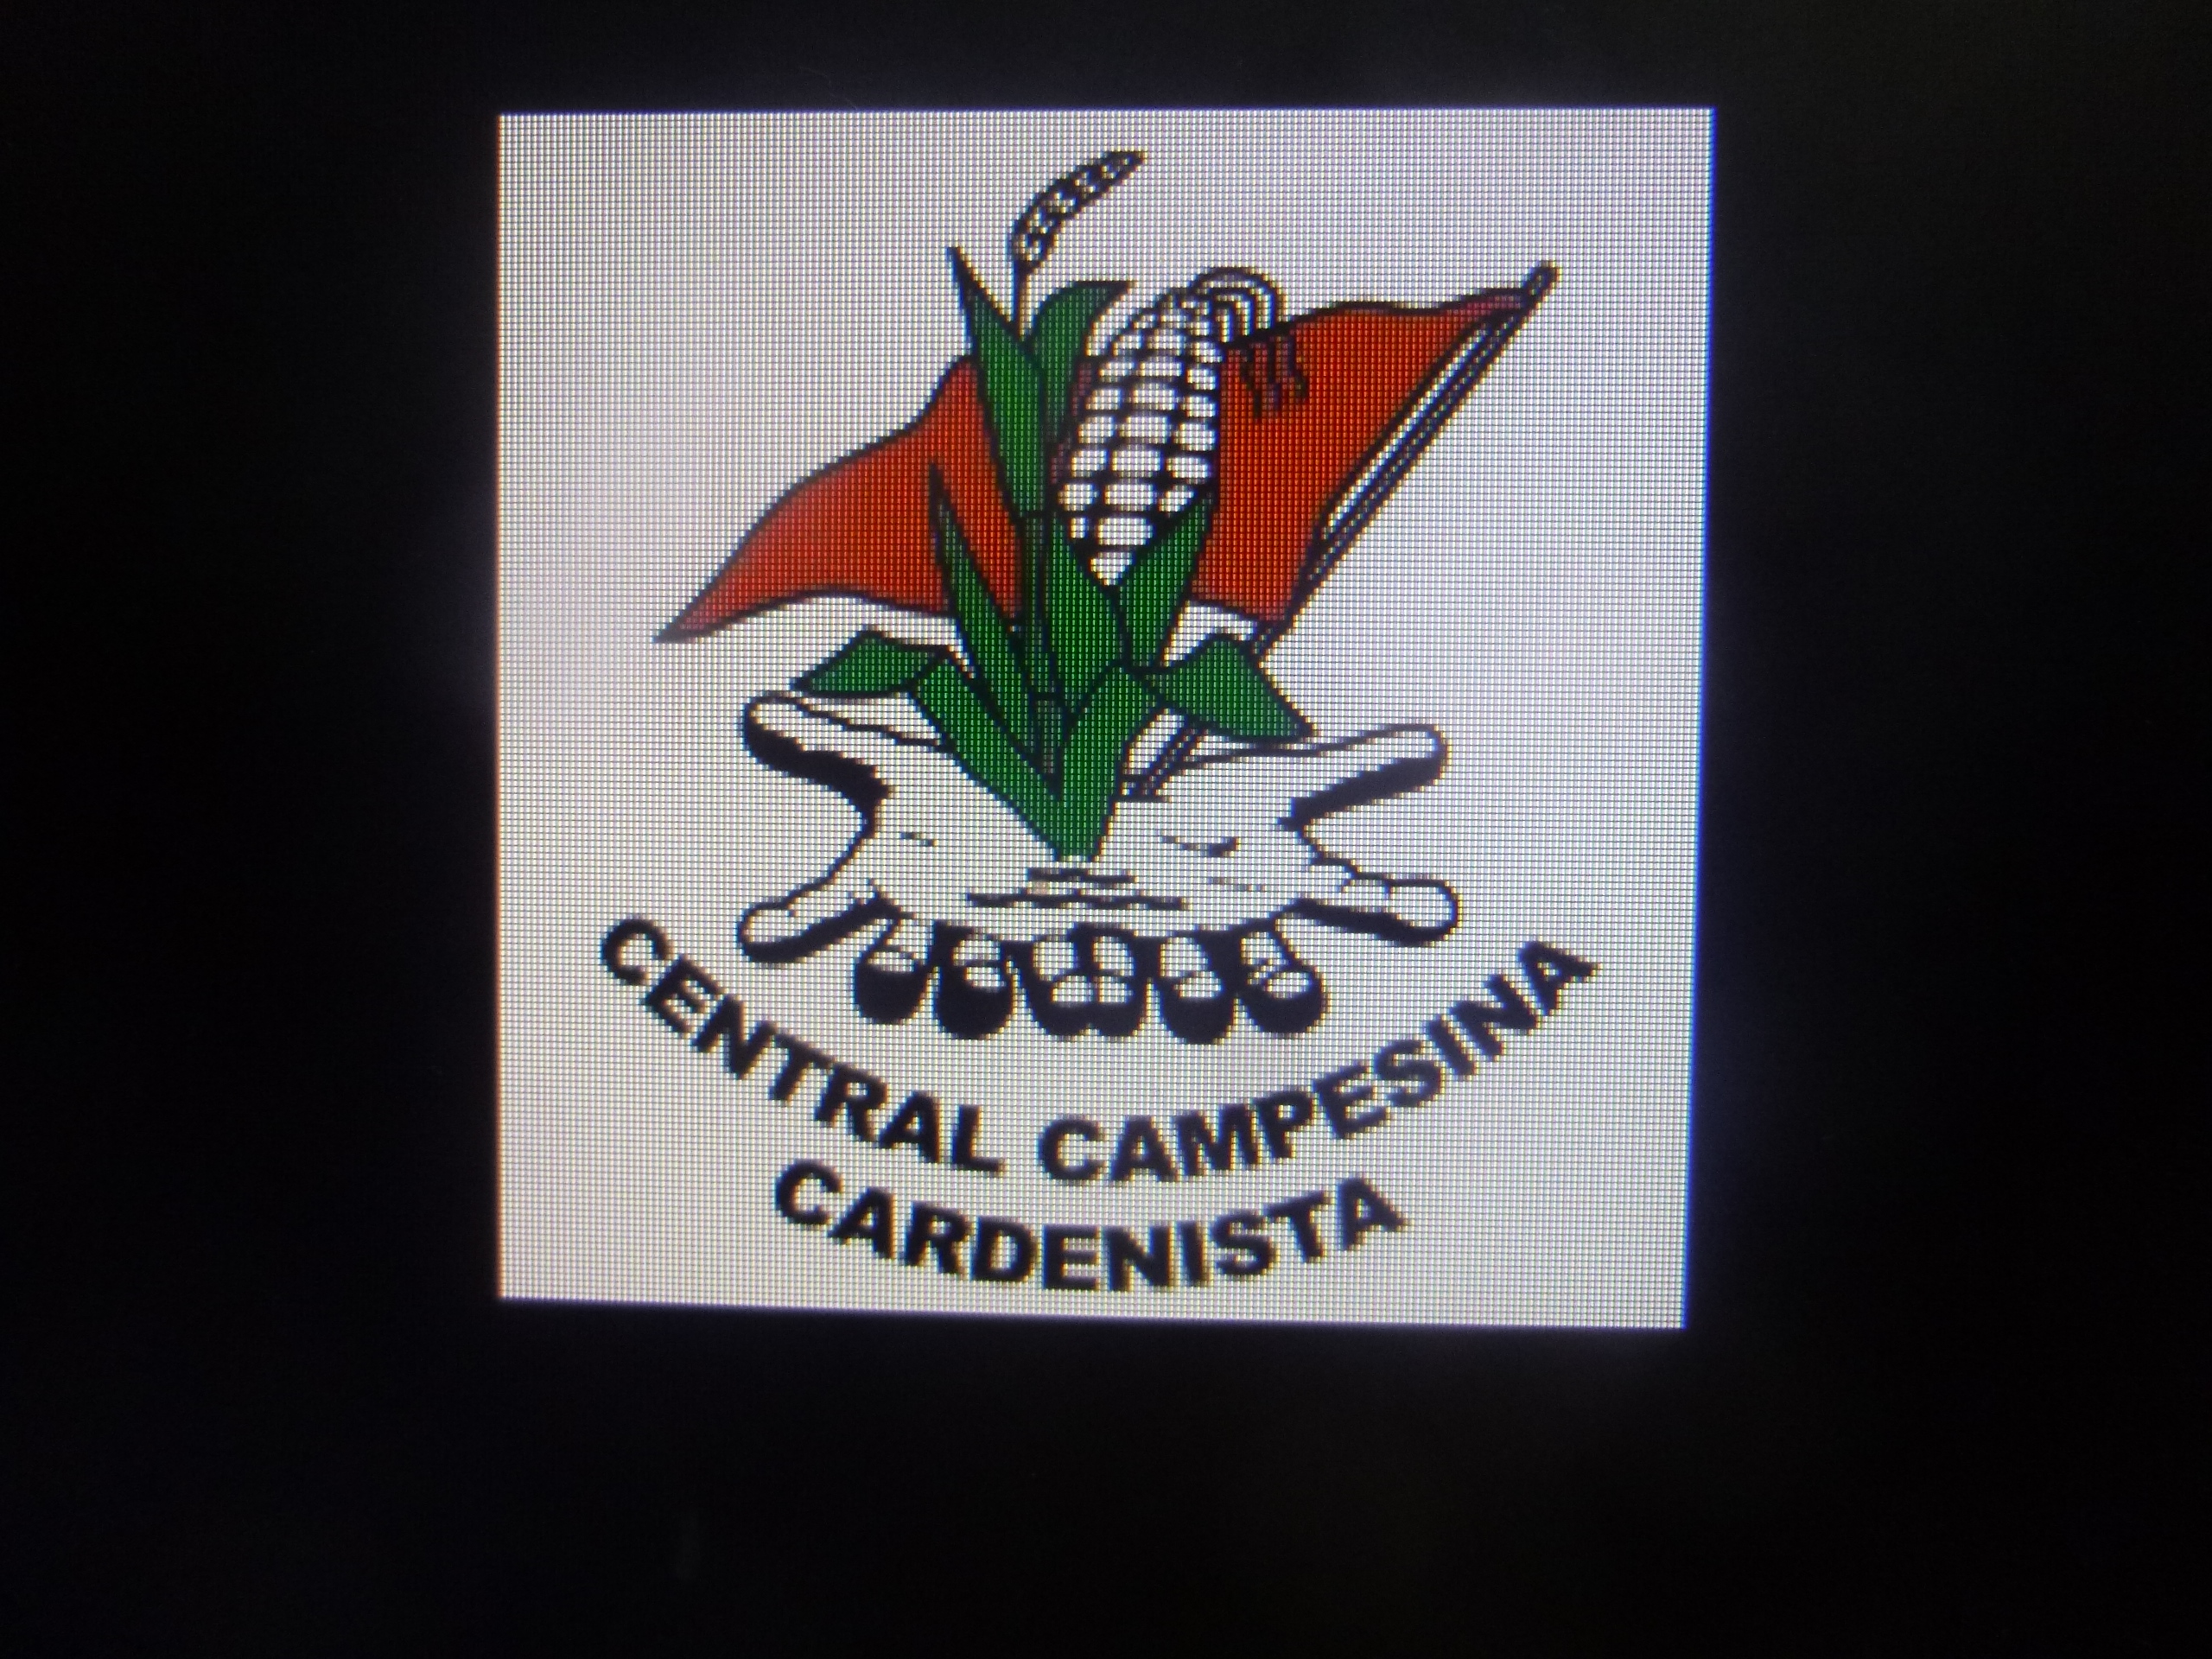 Central Campesina Cardenista pide a la SEDATU la compra de unas 2 mil 700 hectáreas